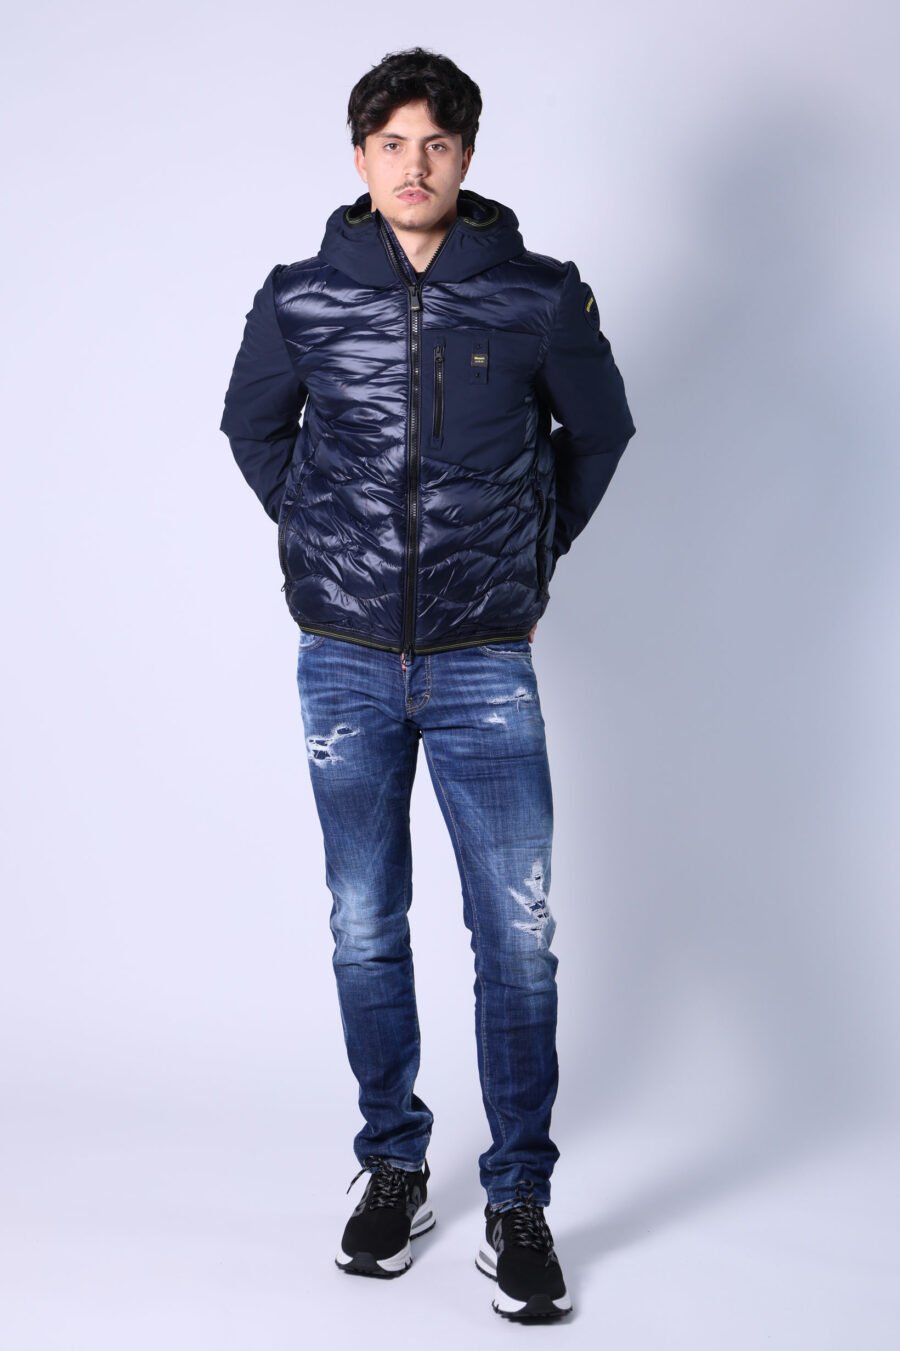 Pantalón vaquero "Slim jean" azul semi desgastado con rotos - Untitled Catalog 05529